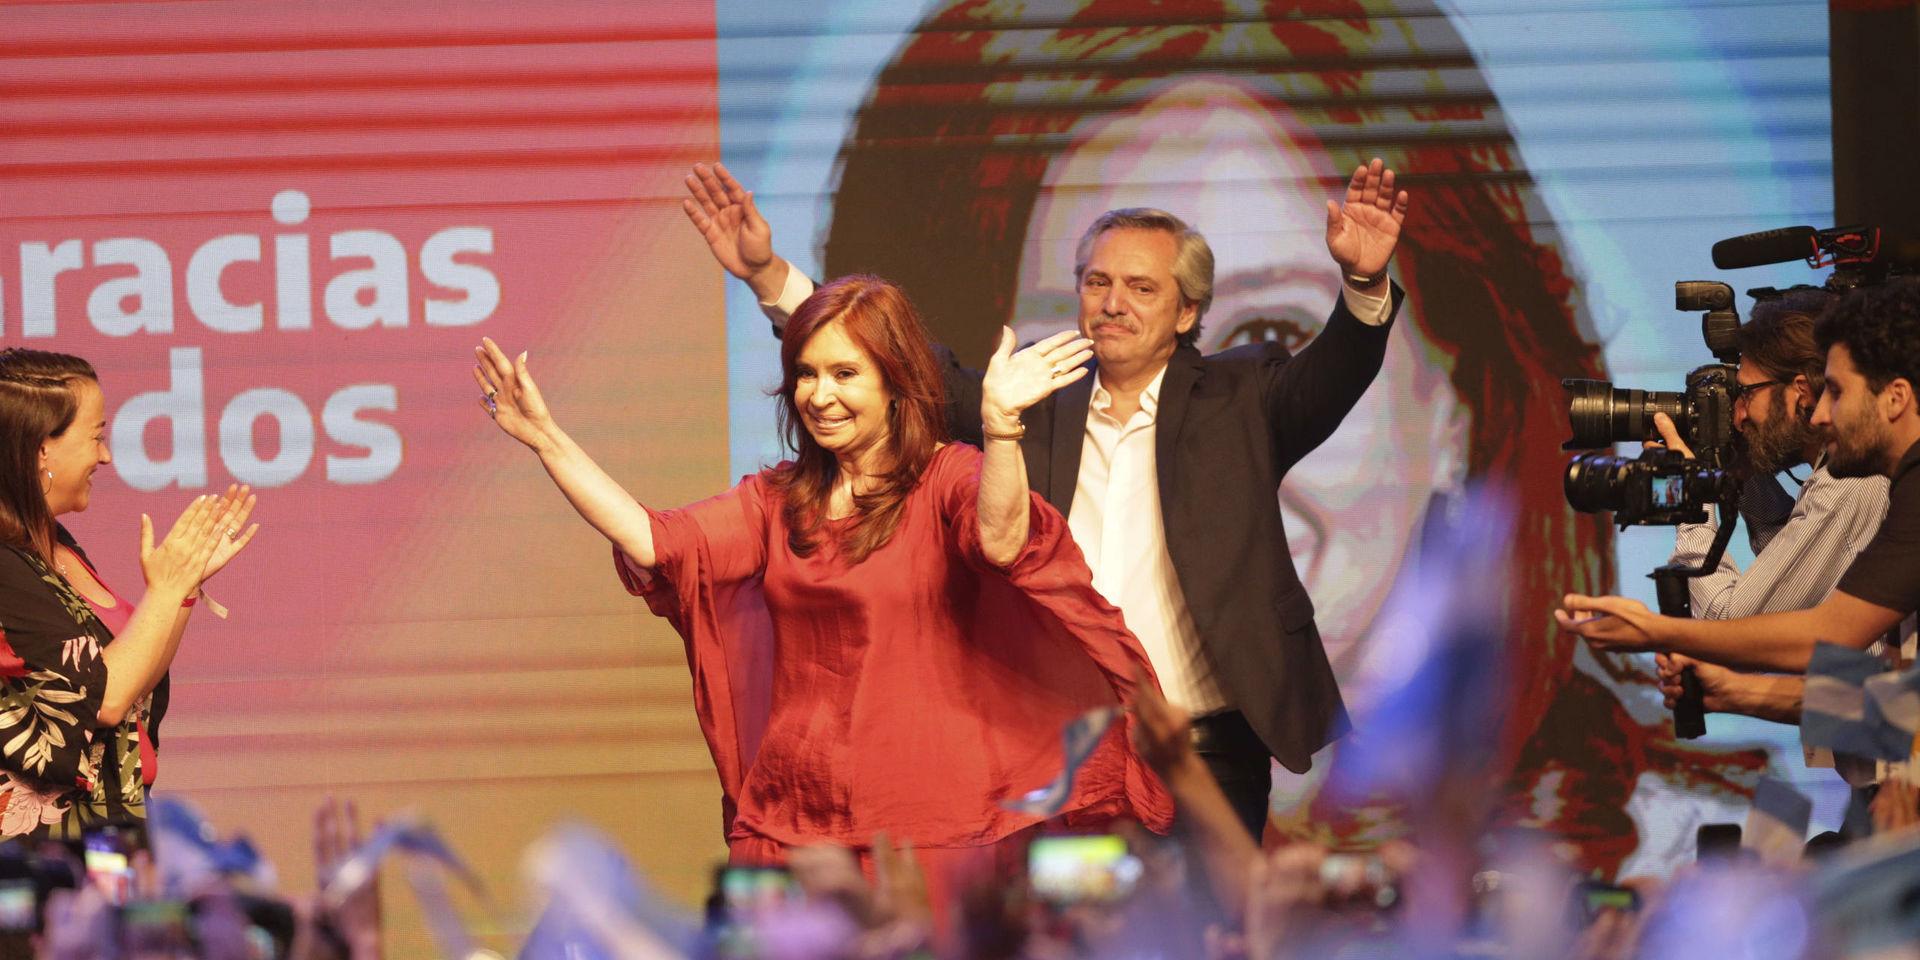 Cristina Fernández de Kirchner och Alberto Fernández jublar på valvakan natten till måndagen.